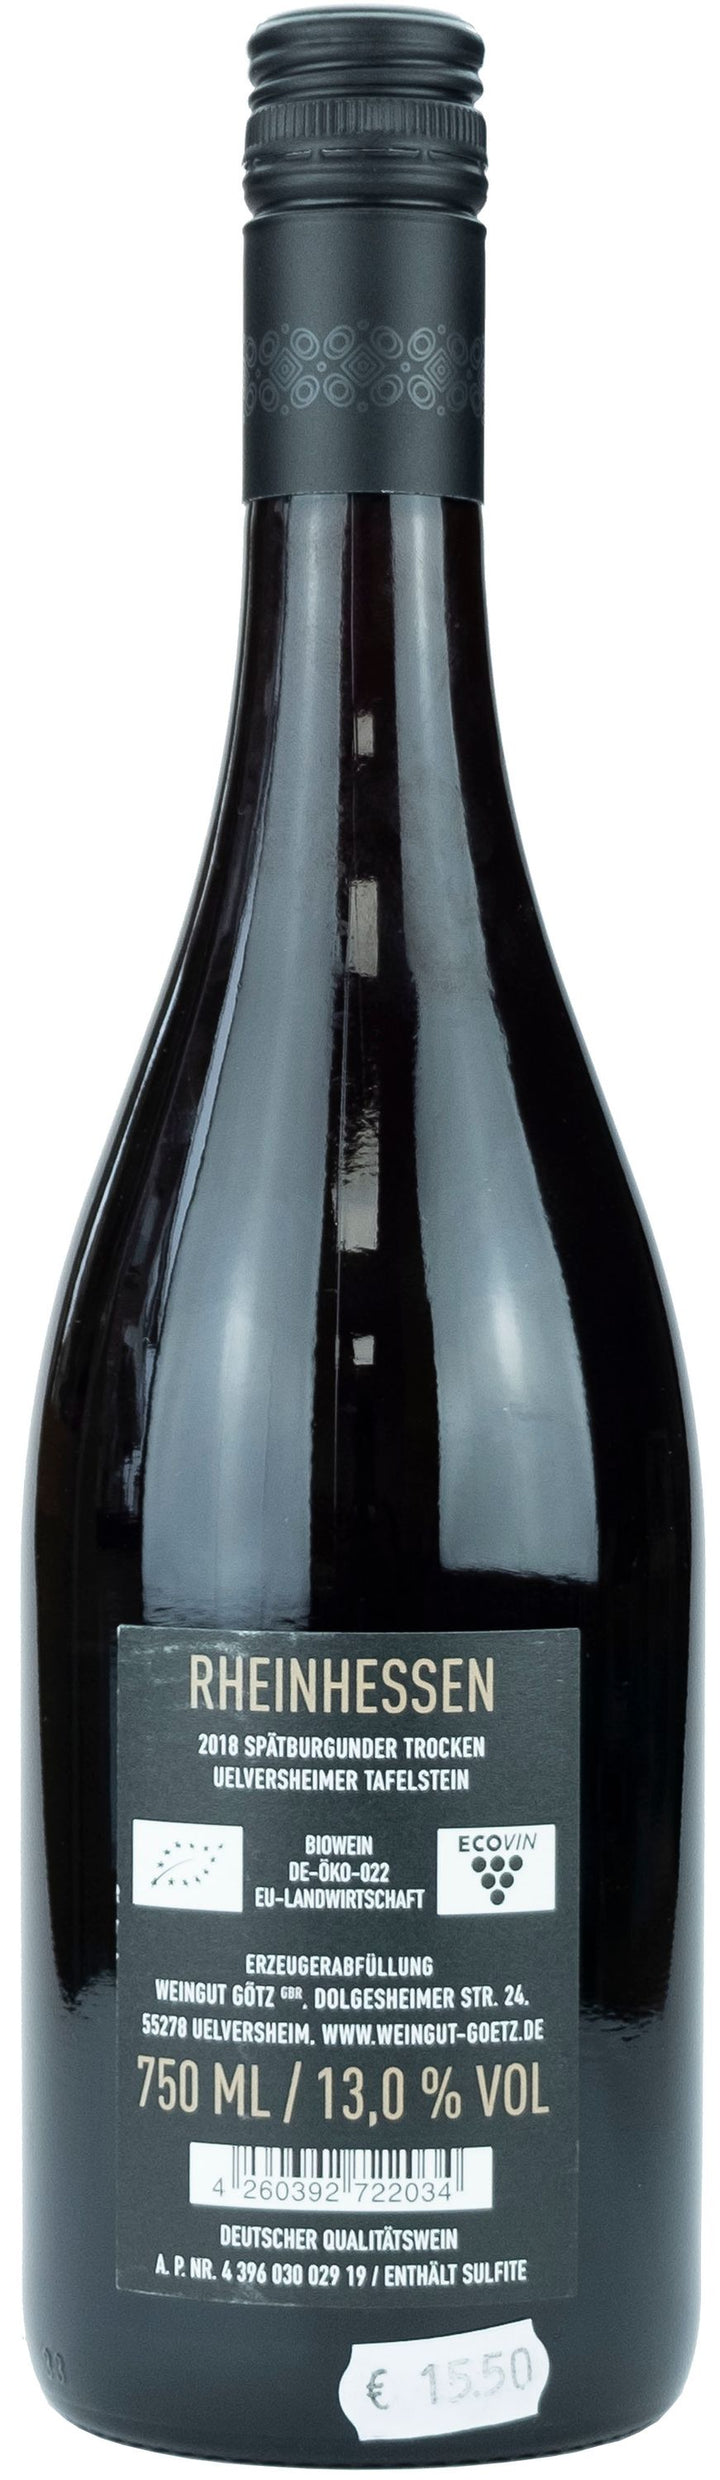 h3 Pinot Noir Tafelstein 2018 0,75l